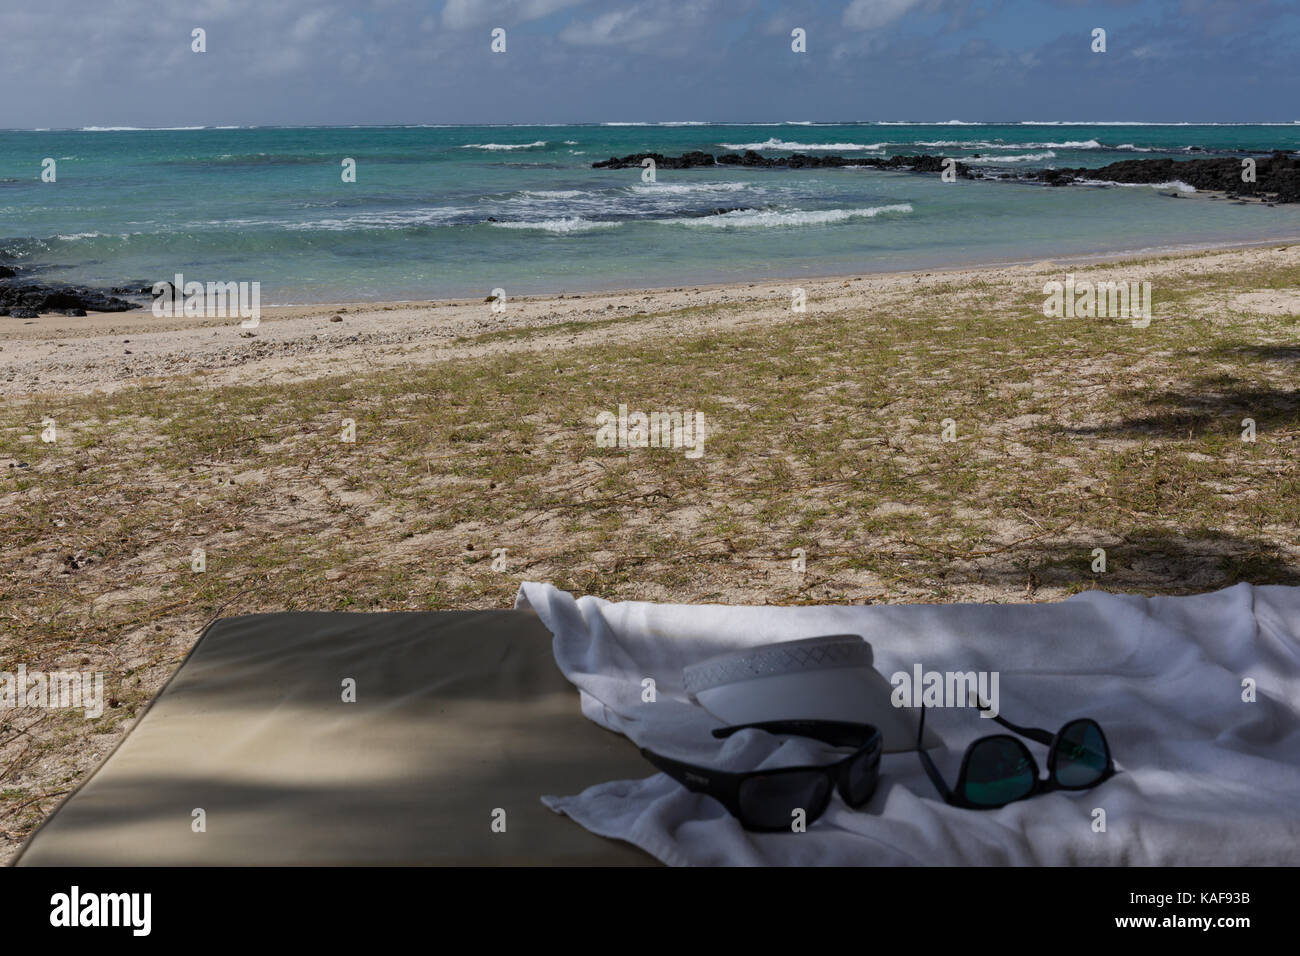 Sunbed on a beach Stock Photo